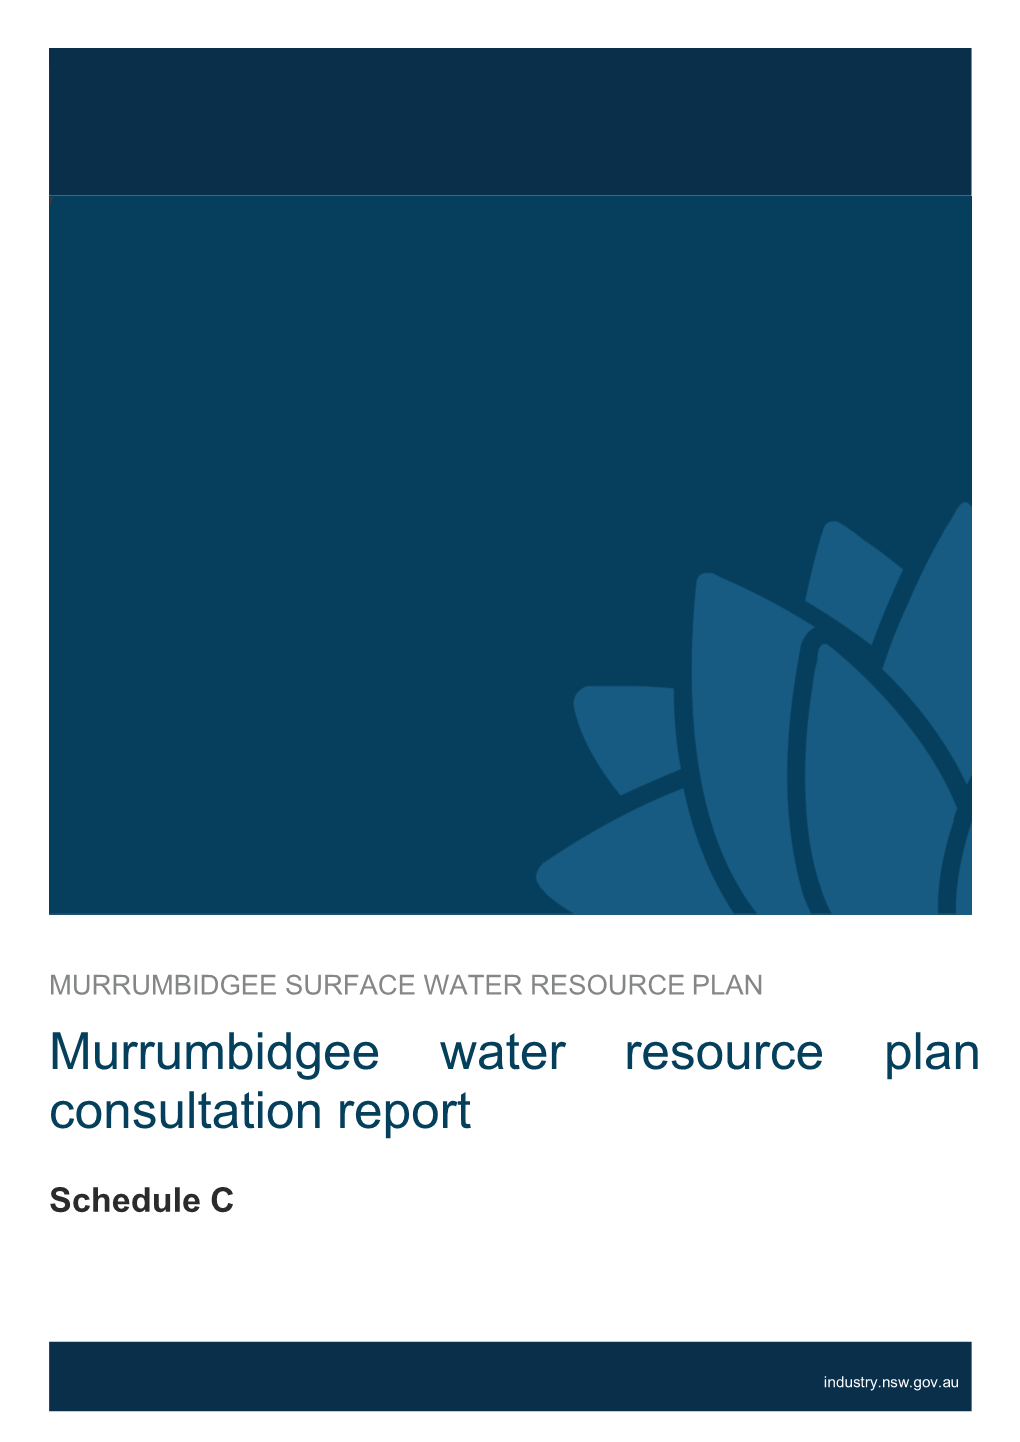 Schedule C: Murrumbidgee Water Resource Plan Consultation Report